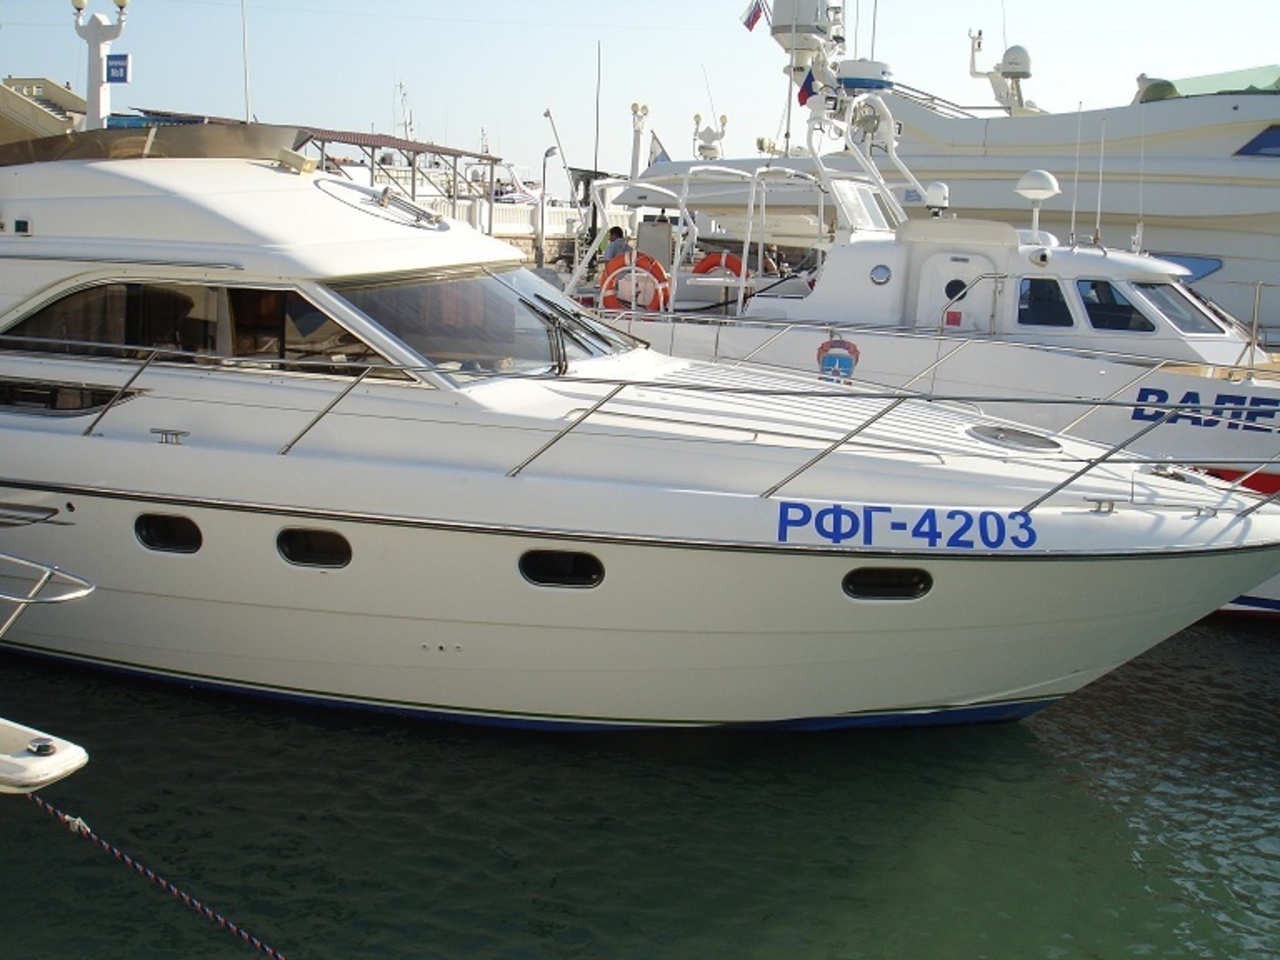 Яхта Vik (35 футов)